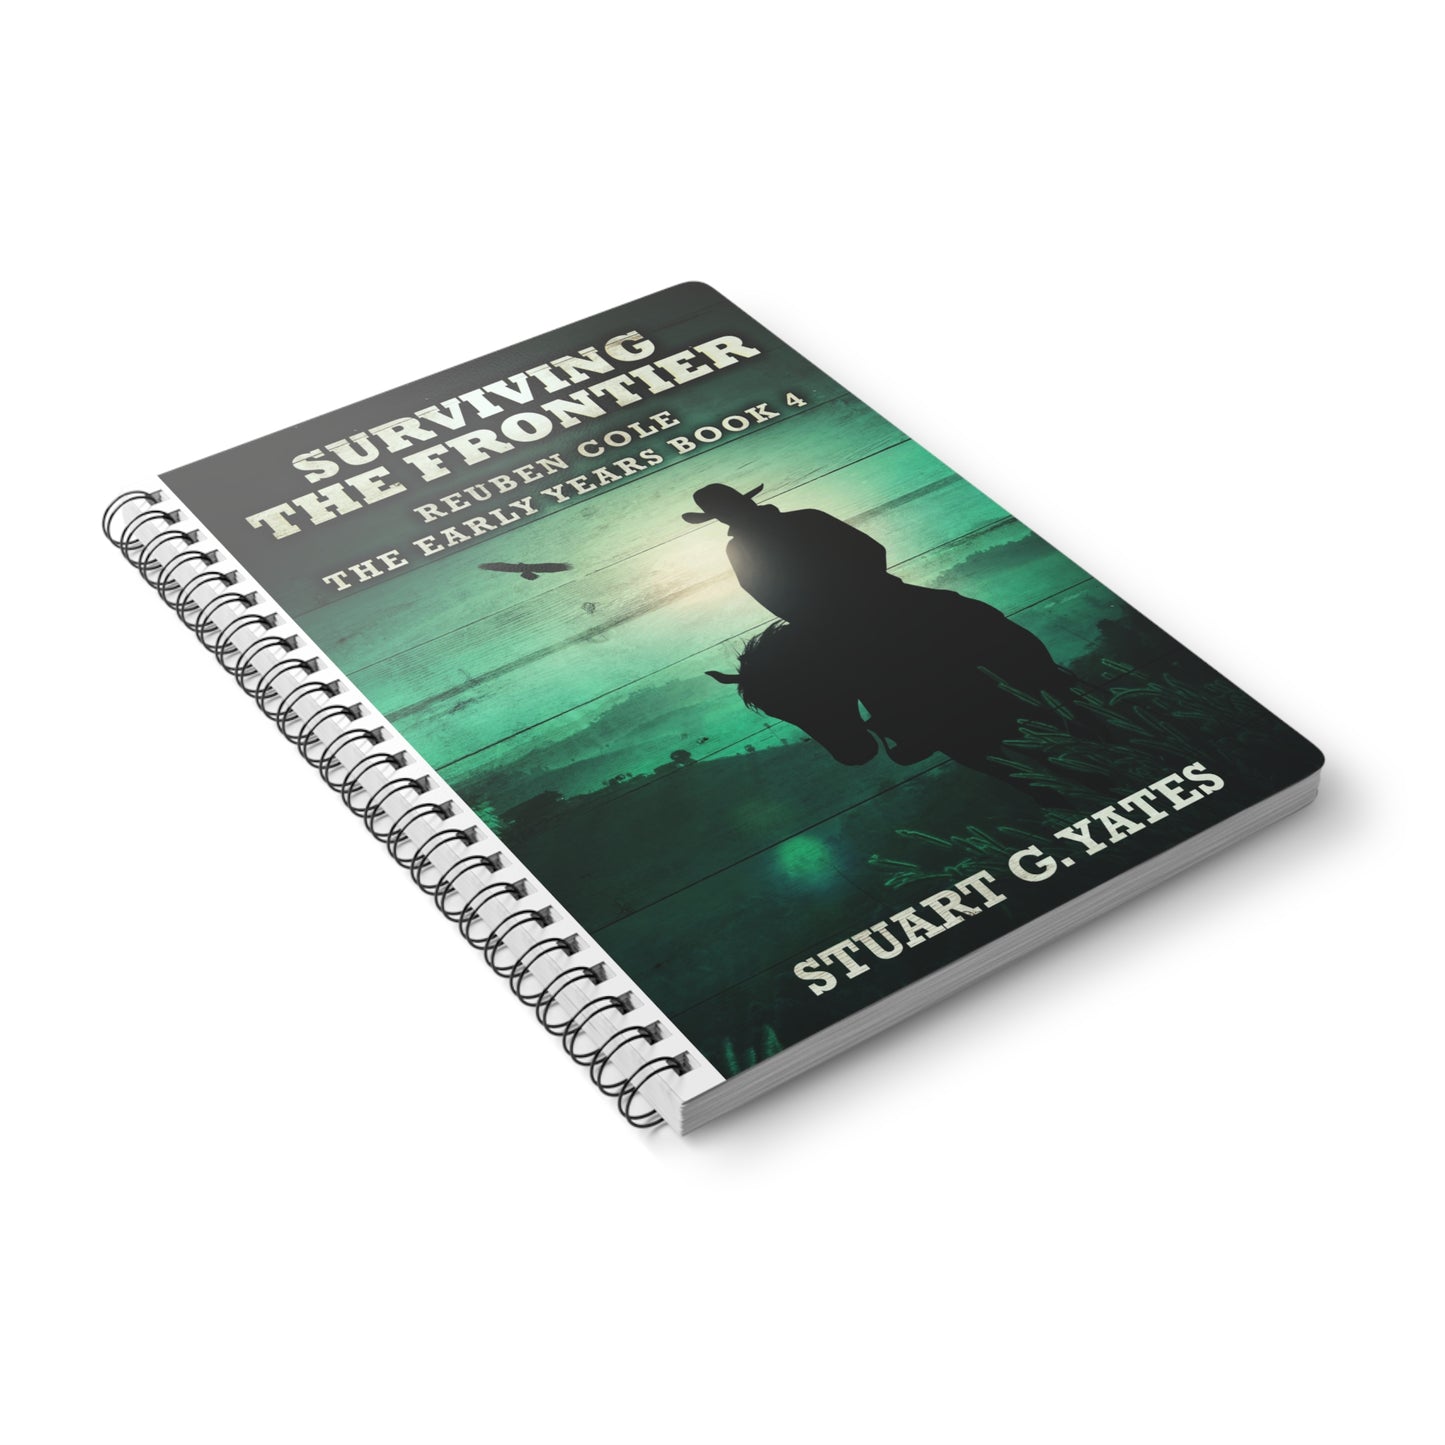 Surviving The Frontier - A5 Wirebound Notebook